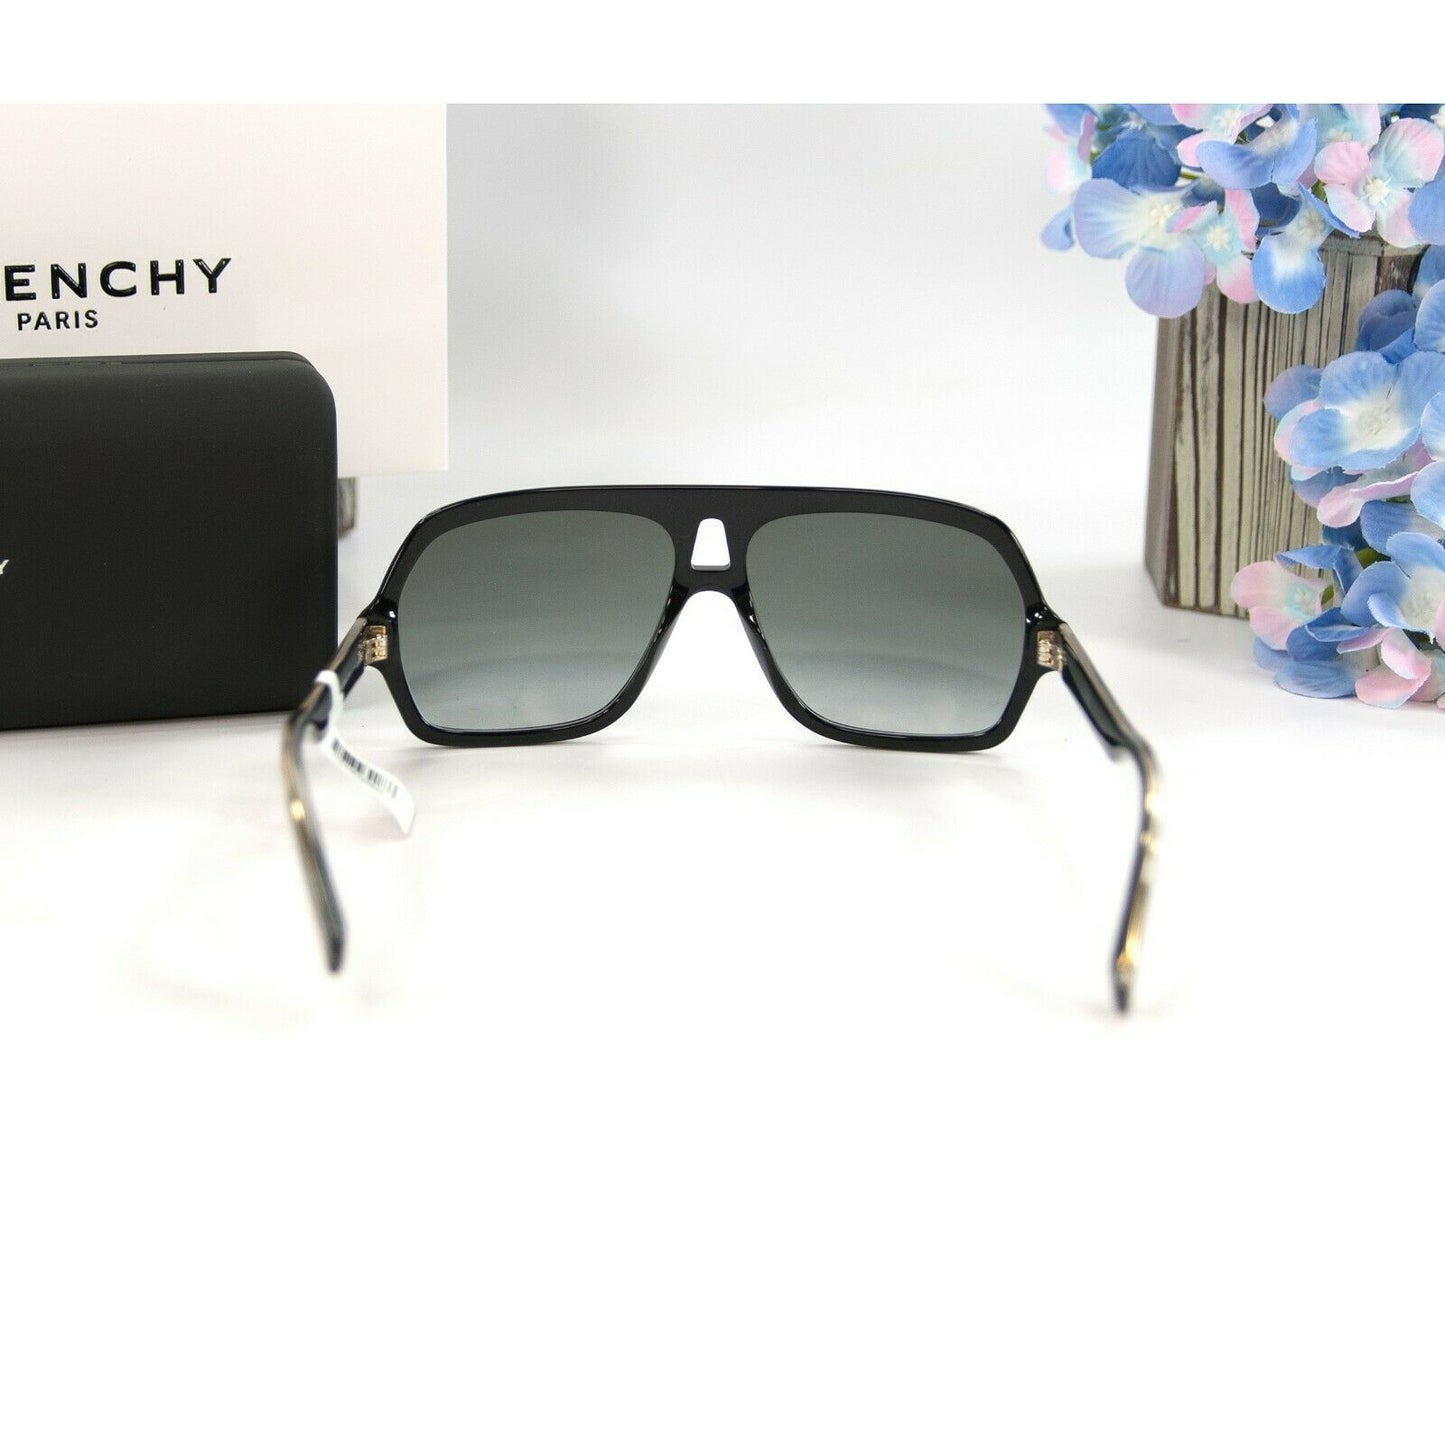 Givenchy GV8079O Black Gold Oversize Acrylic Logo Sunglasses NWT Case